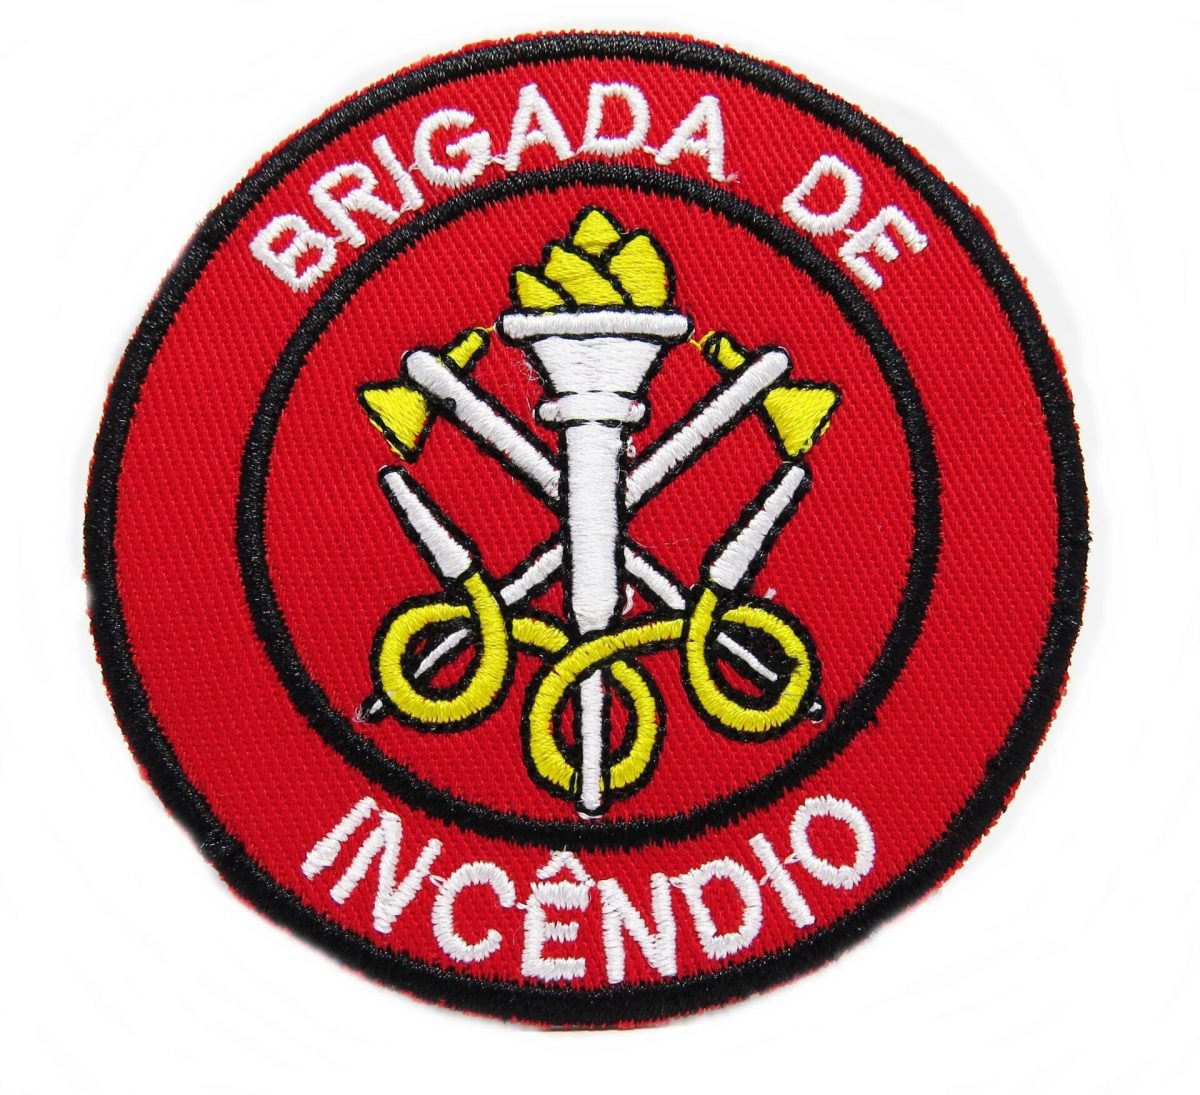 00316bordado brigada de inc ndio 1 - Couro Art Bombeiro Civil, Saúde e Tático